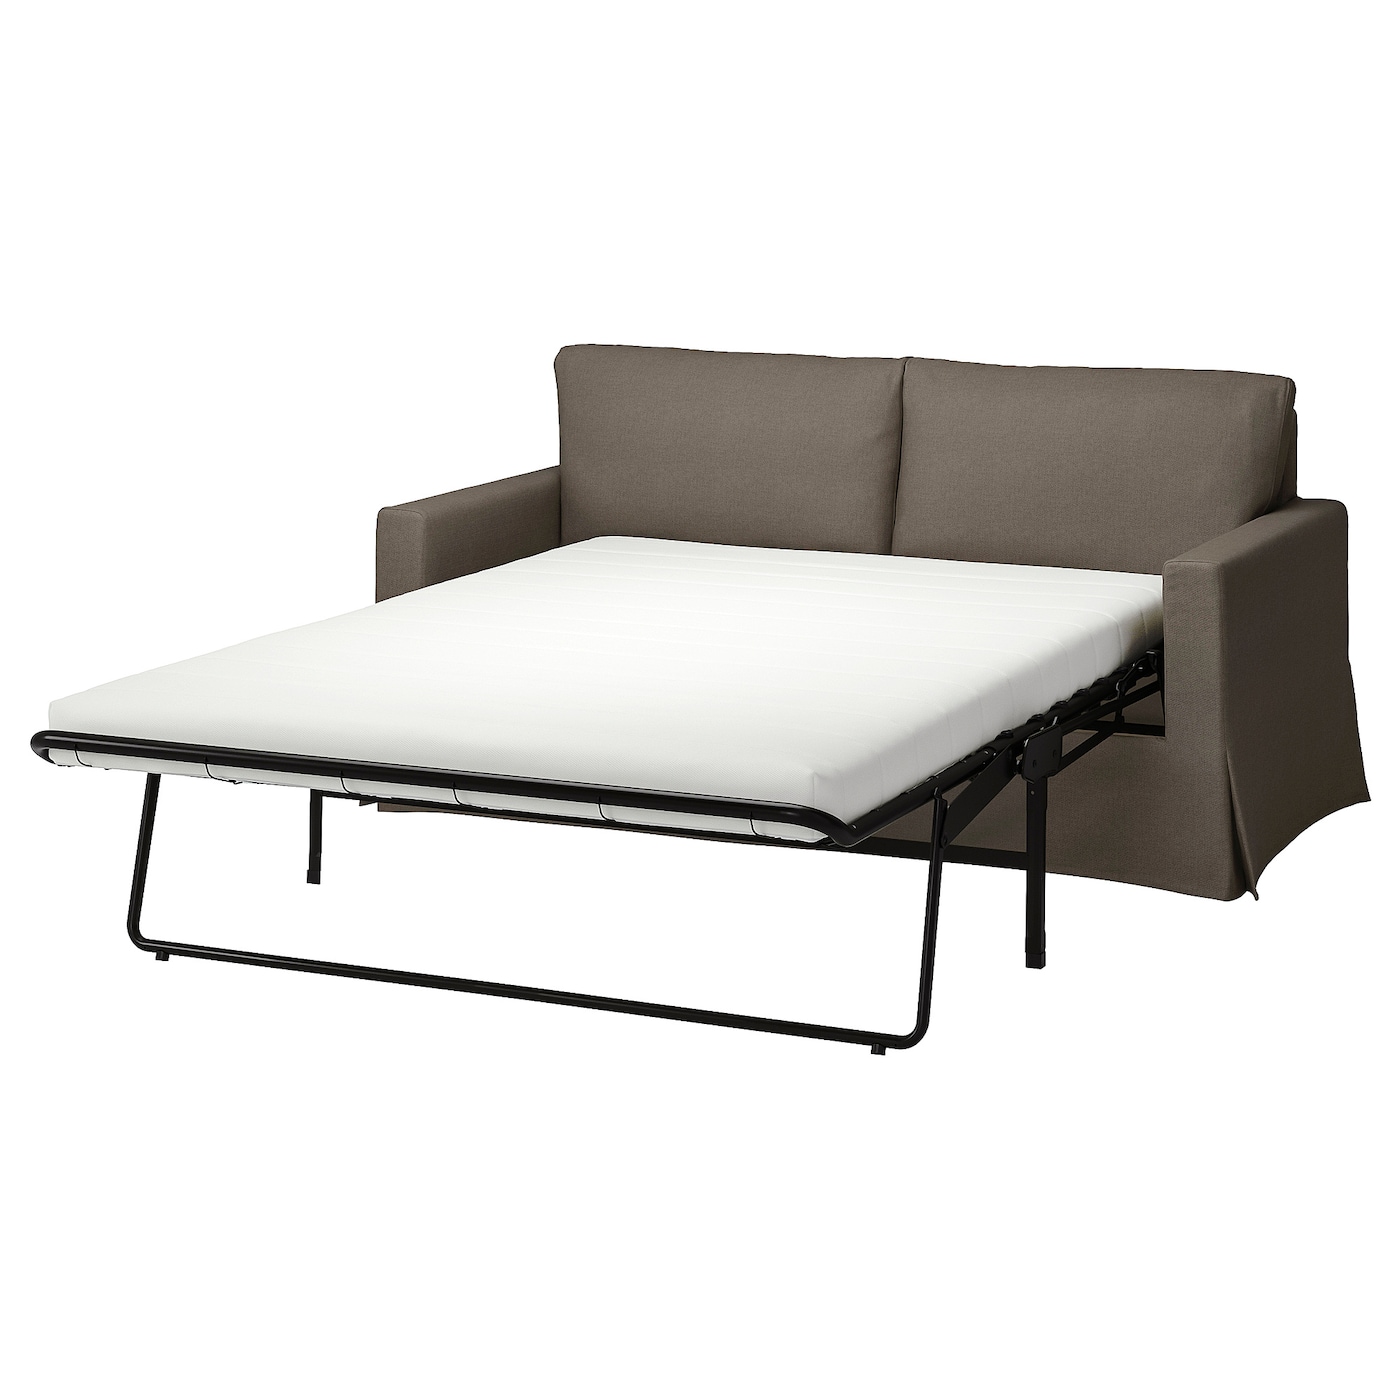 2-местный диван - IKEA HYLTARP, 93x182см, серый, ХИЛТАРП ИКЕА